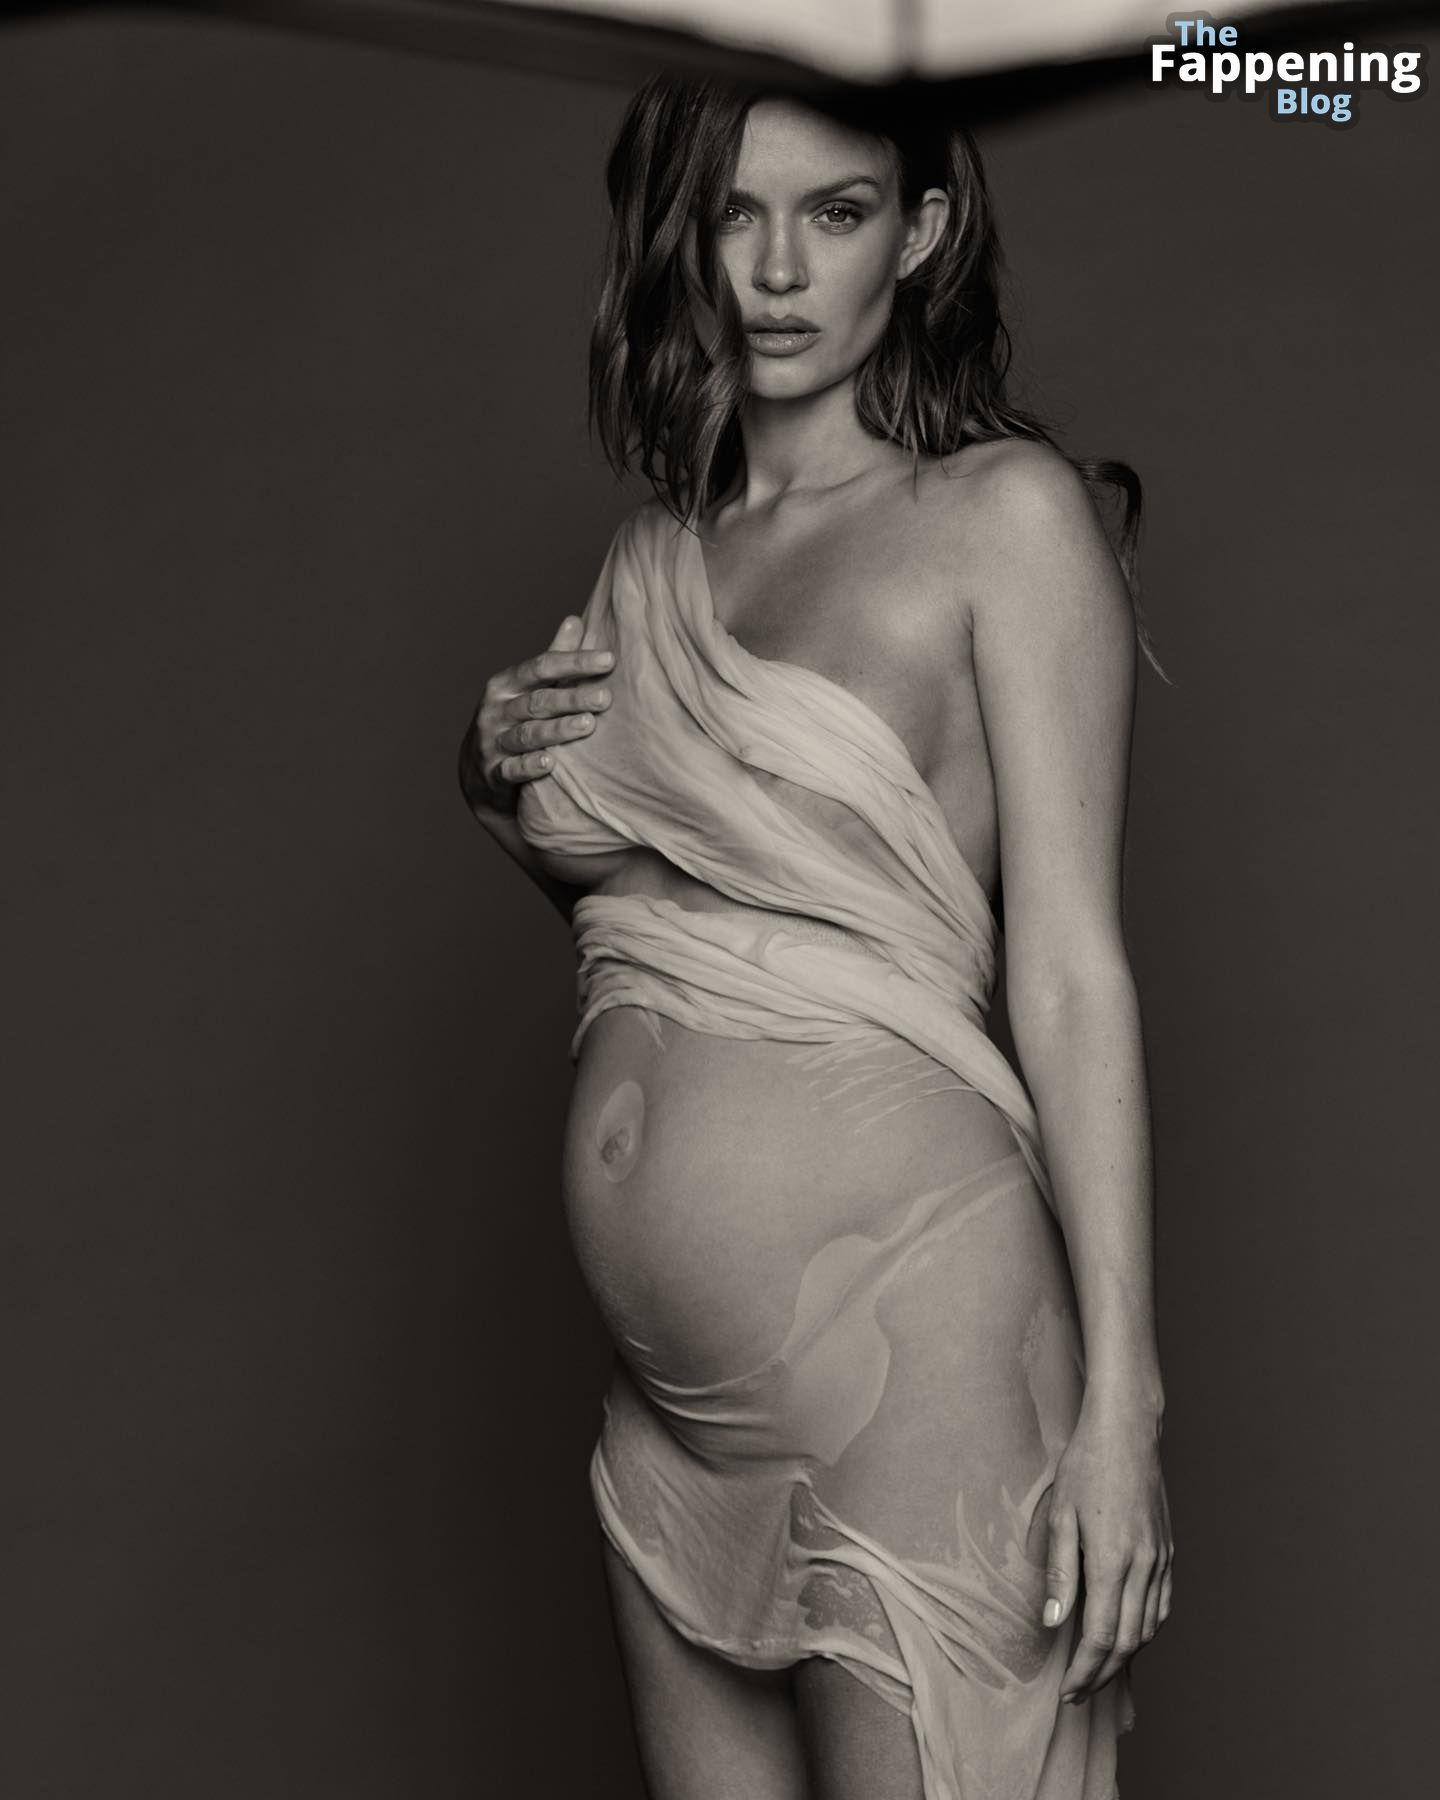 Pregnant-Josephine-Skriver-The-Fappening-Blog-2.jpg